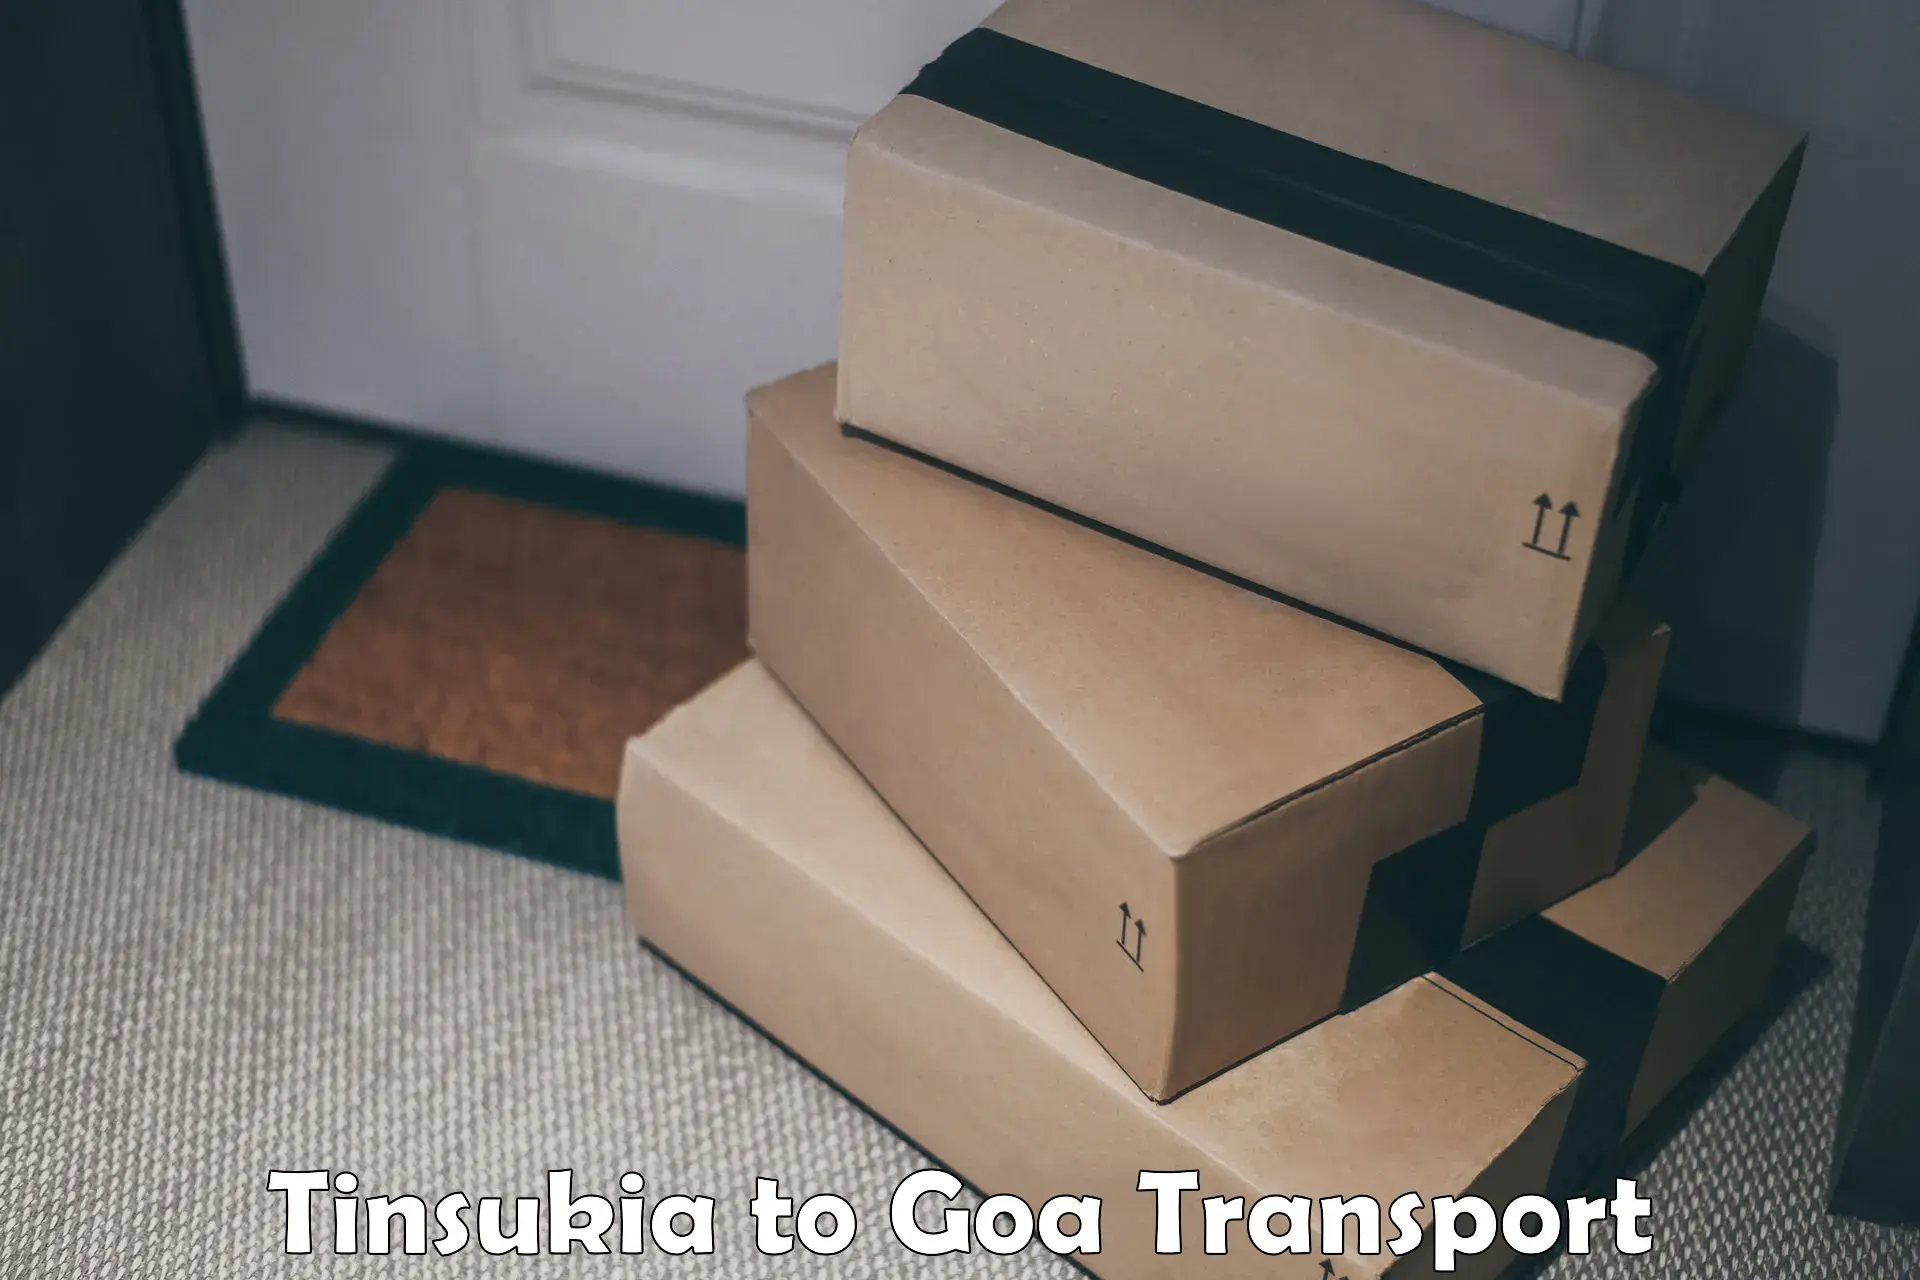 Cargo transport services Tinsukia to Goa University